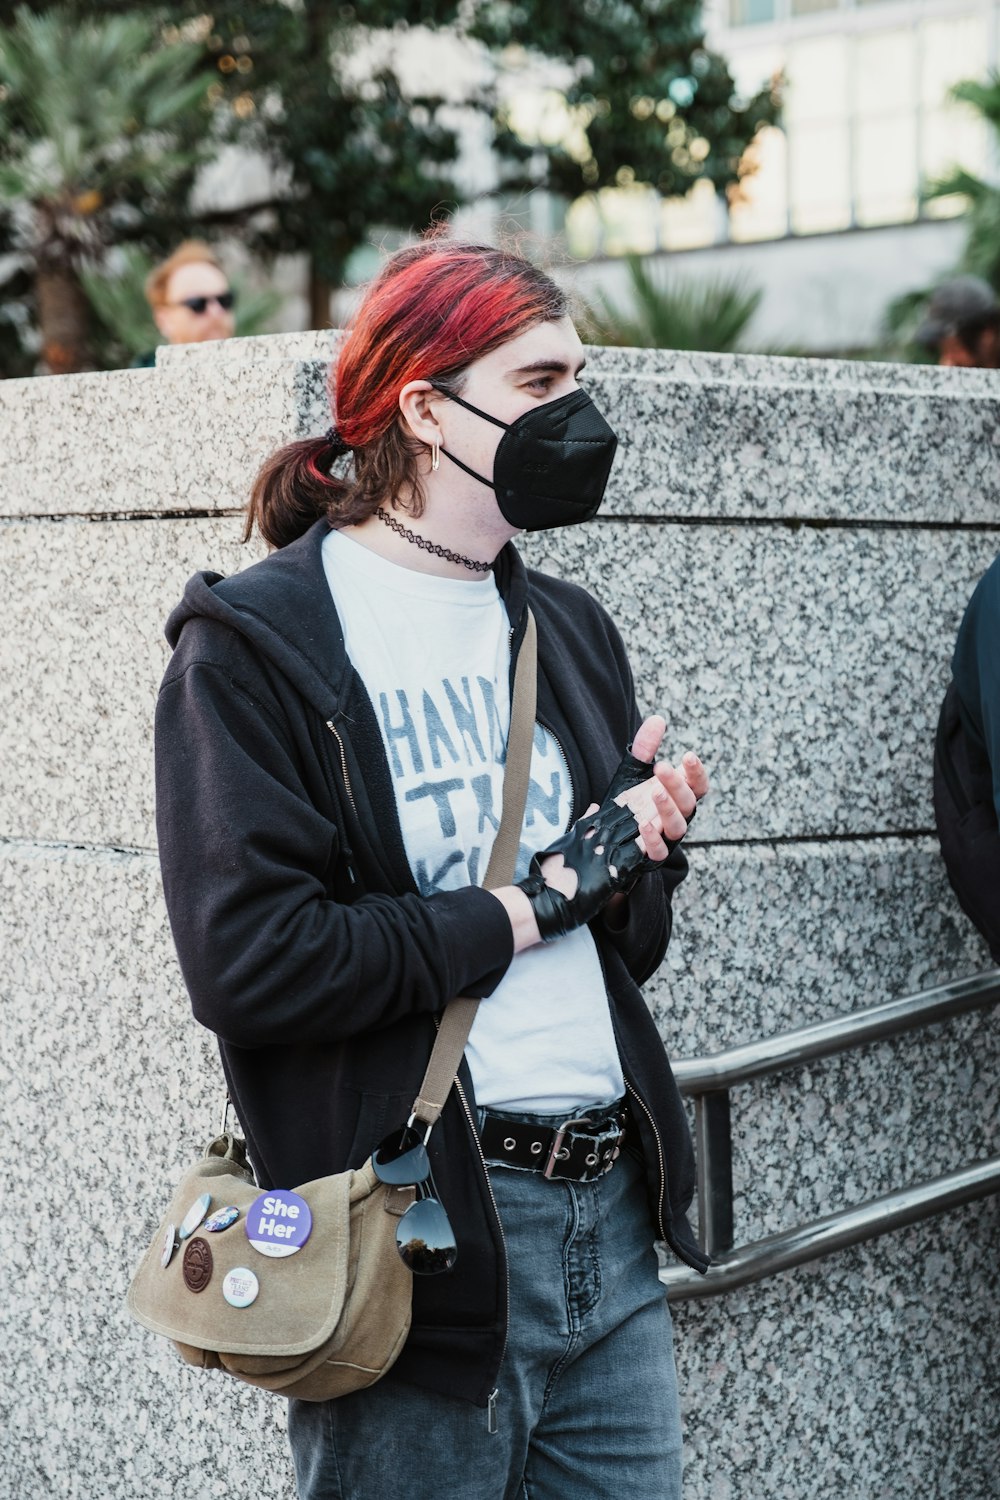 Una donna con i capelli rossi che indossa una maschera facciale